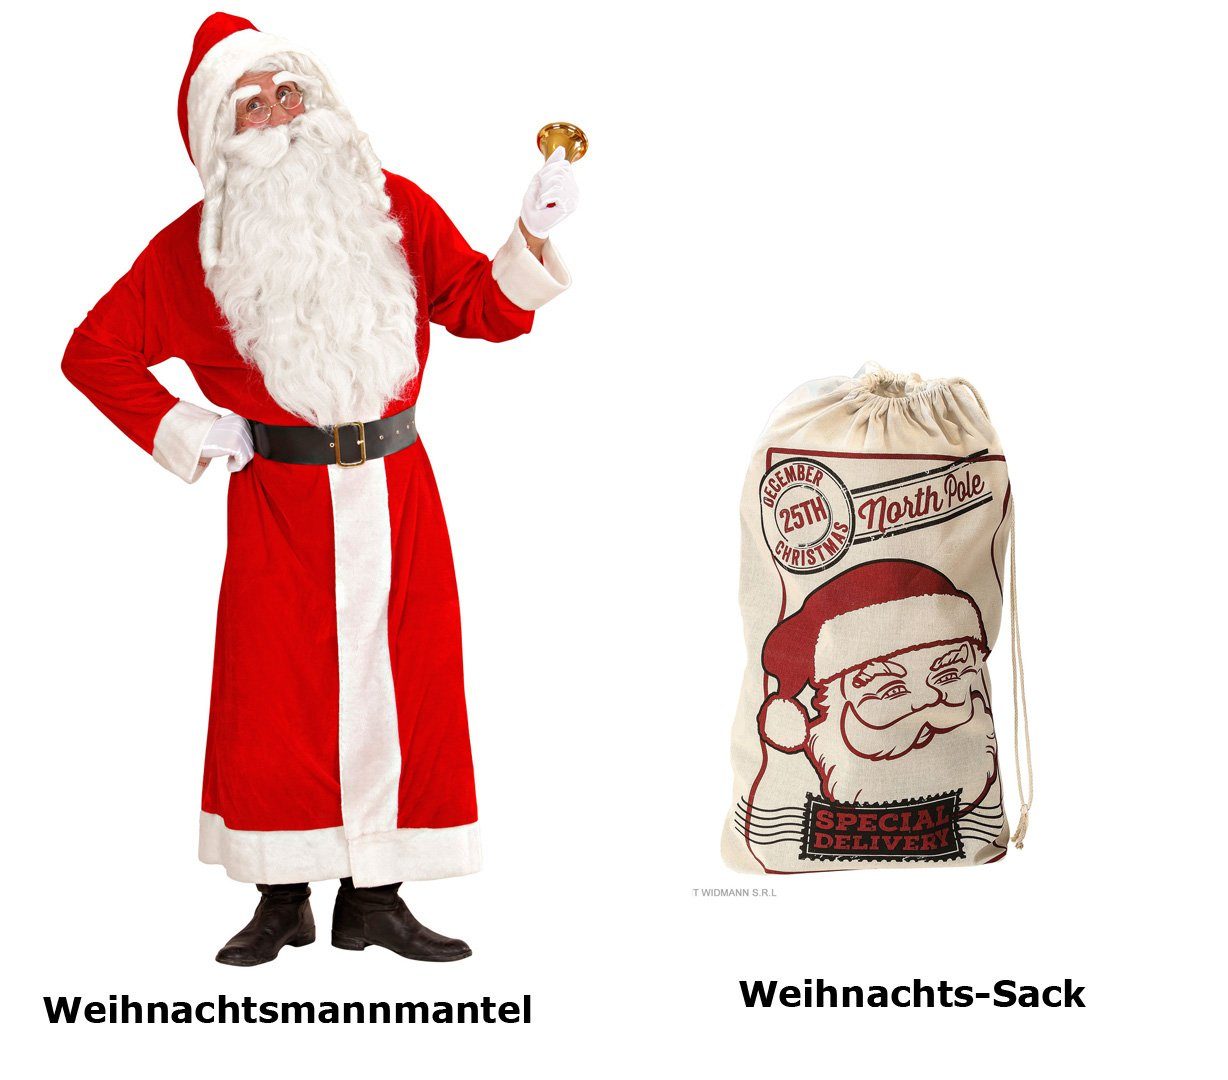 Scherzwelt Weihnachtsmann Santa Claus Kostüm XL - Weihnachtsmann - Nikolaus  SAMT Delux + Weihnachtssack, Weihnachtsmannkostüm, Nikolauskostüm